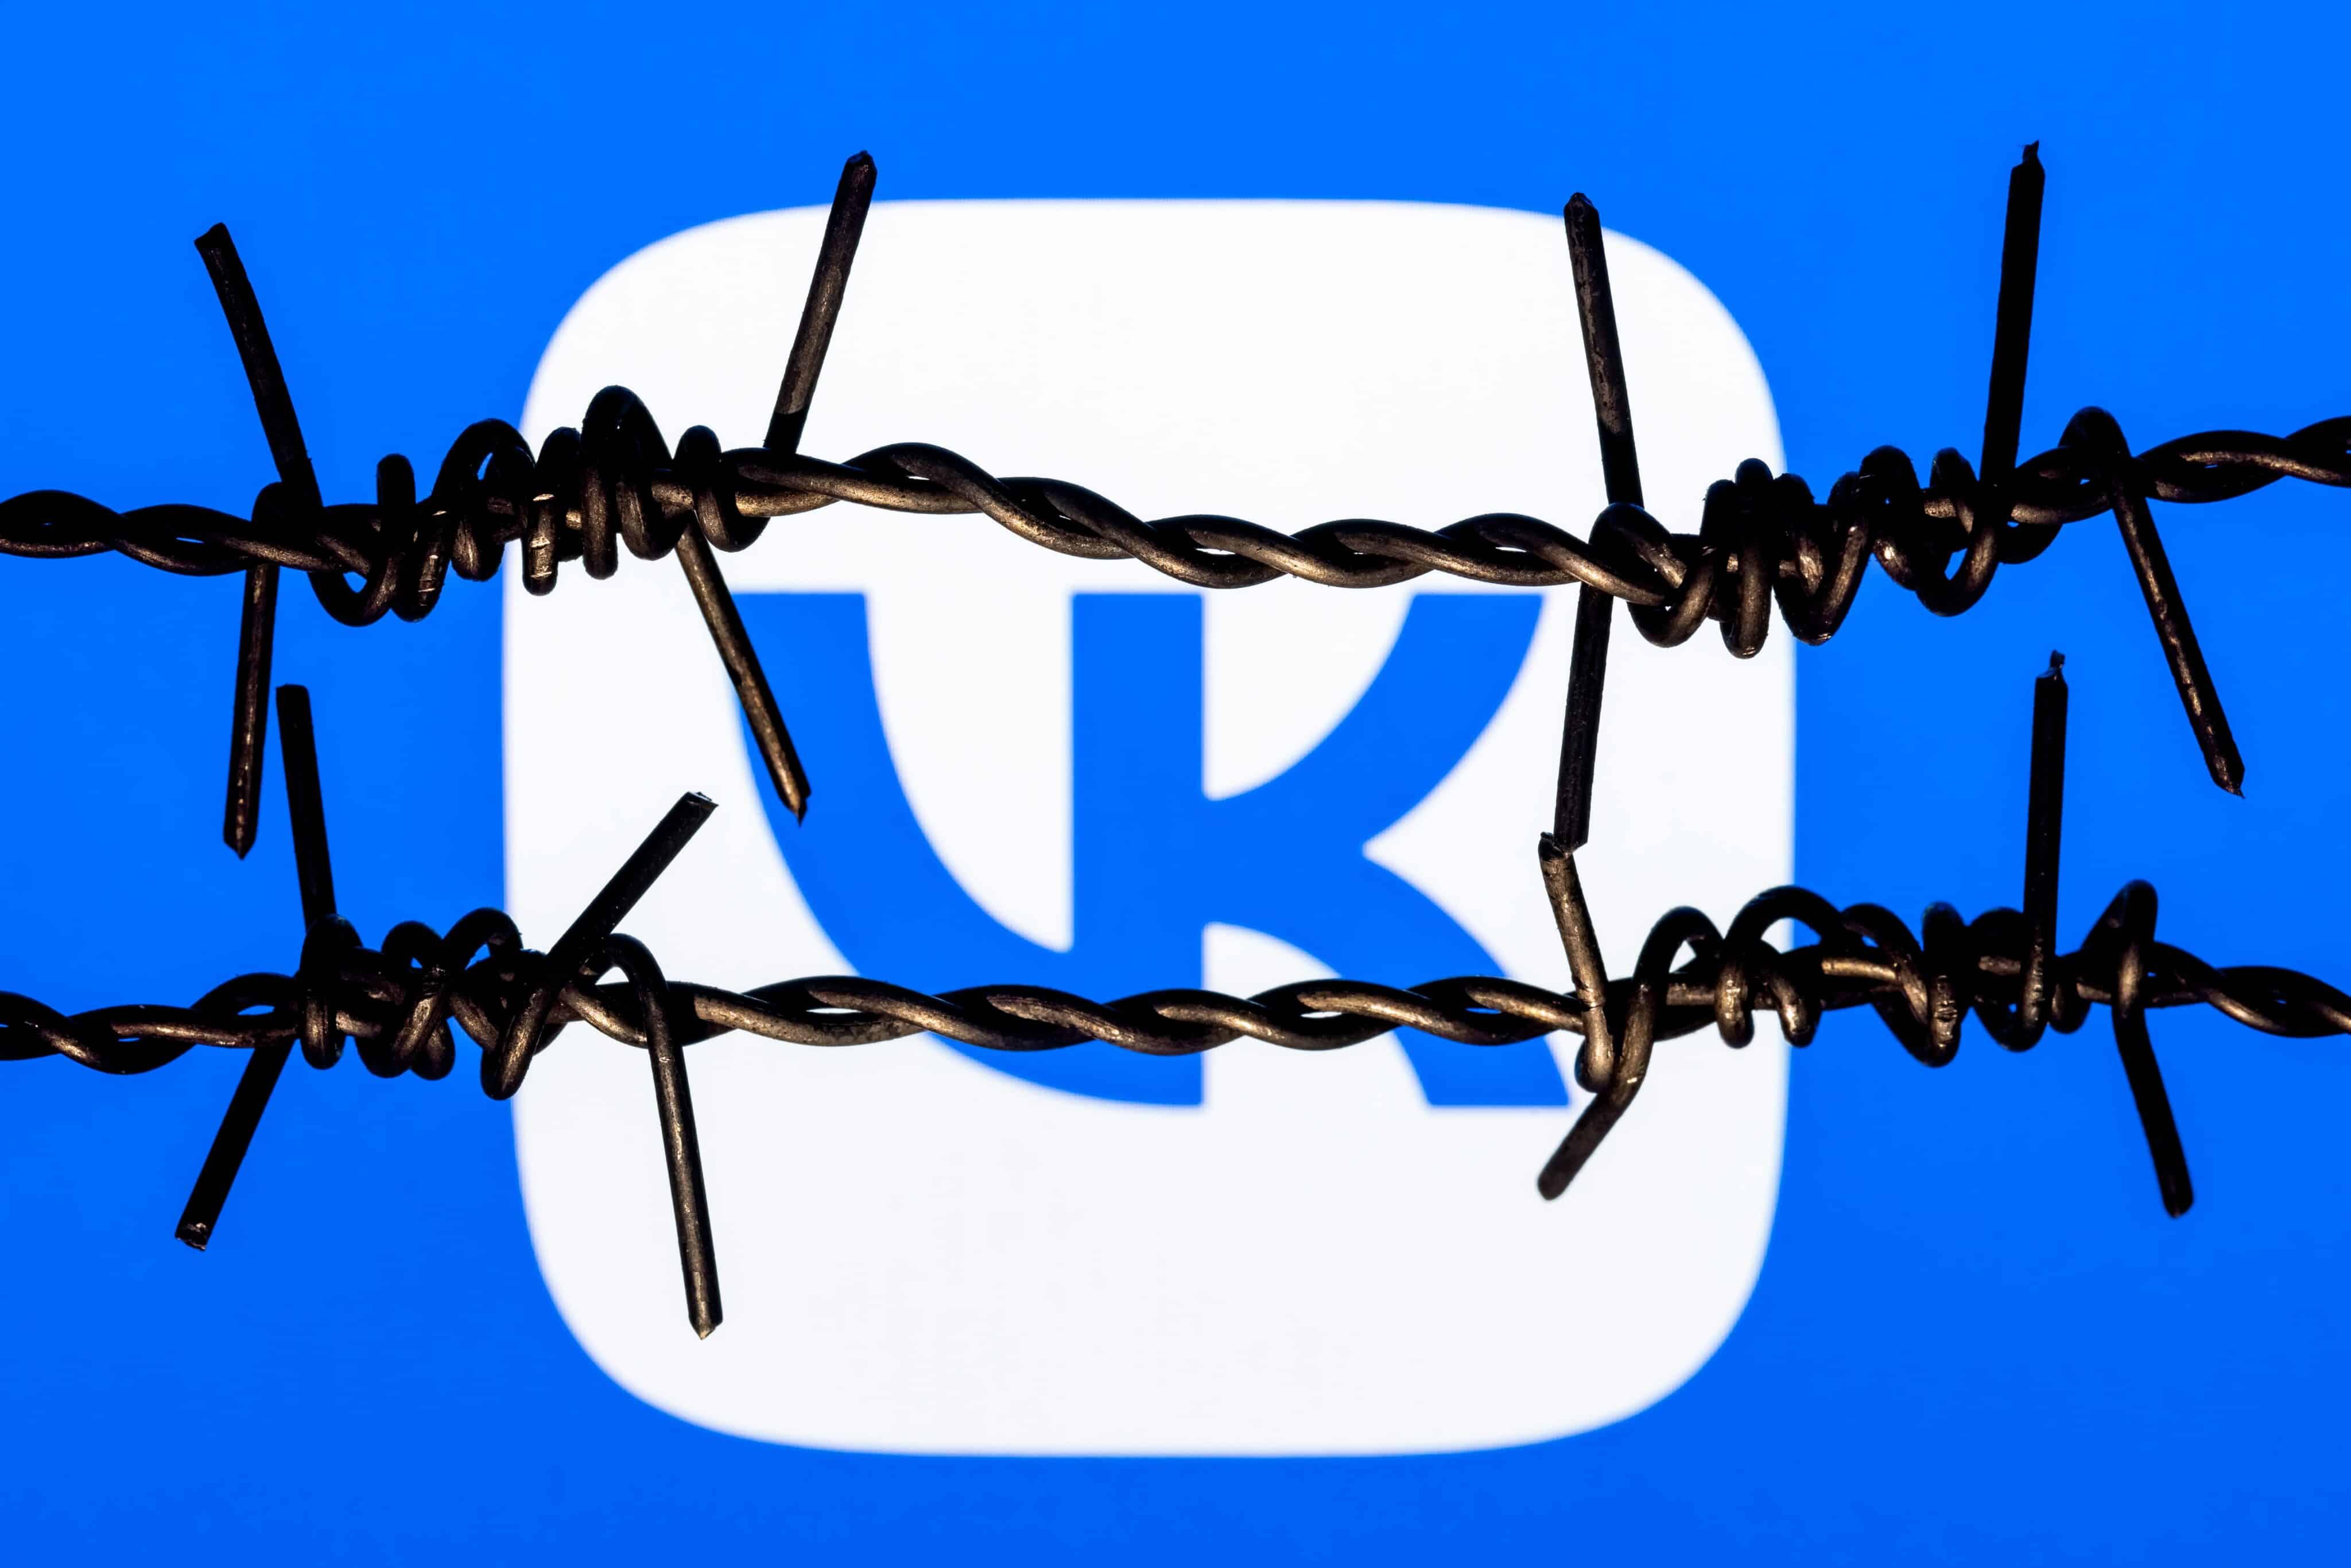 Rússia exige que Apple explique remoção de estatal VK da App Store - Época  Negócios